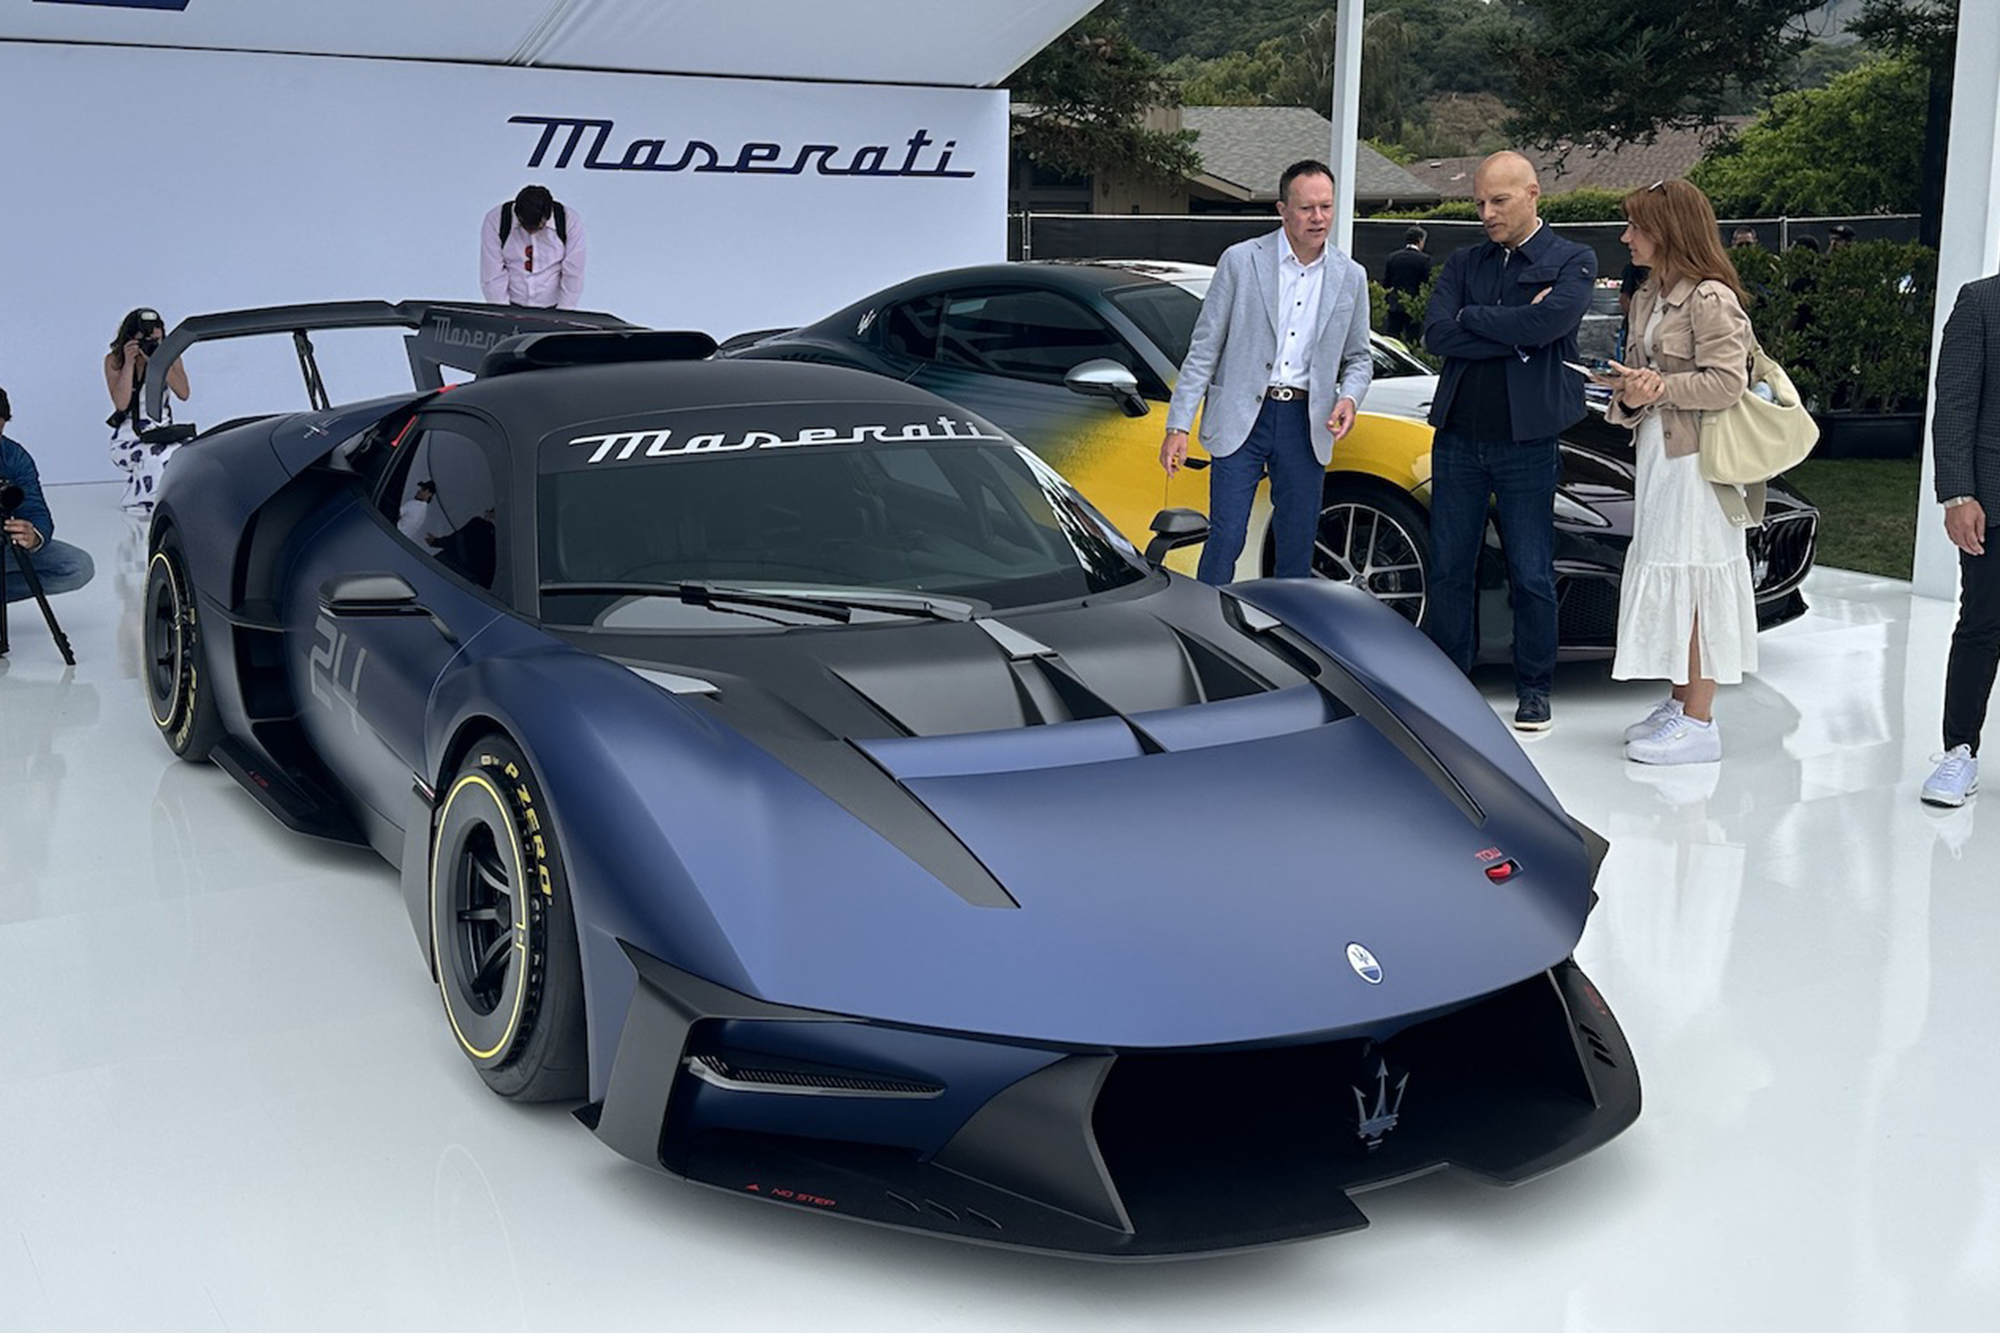 La estrella de Maserati fue el MC Xtrema, solo disponible para circuito